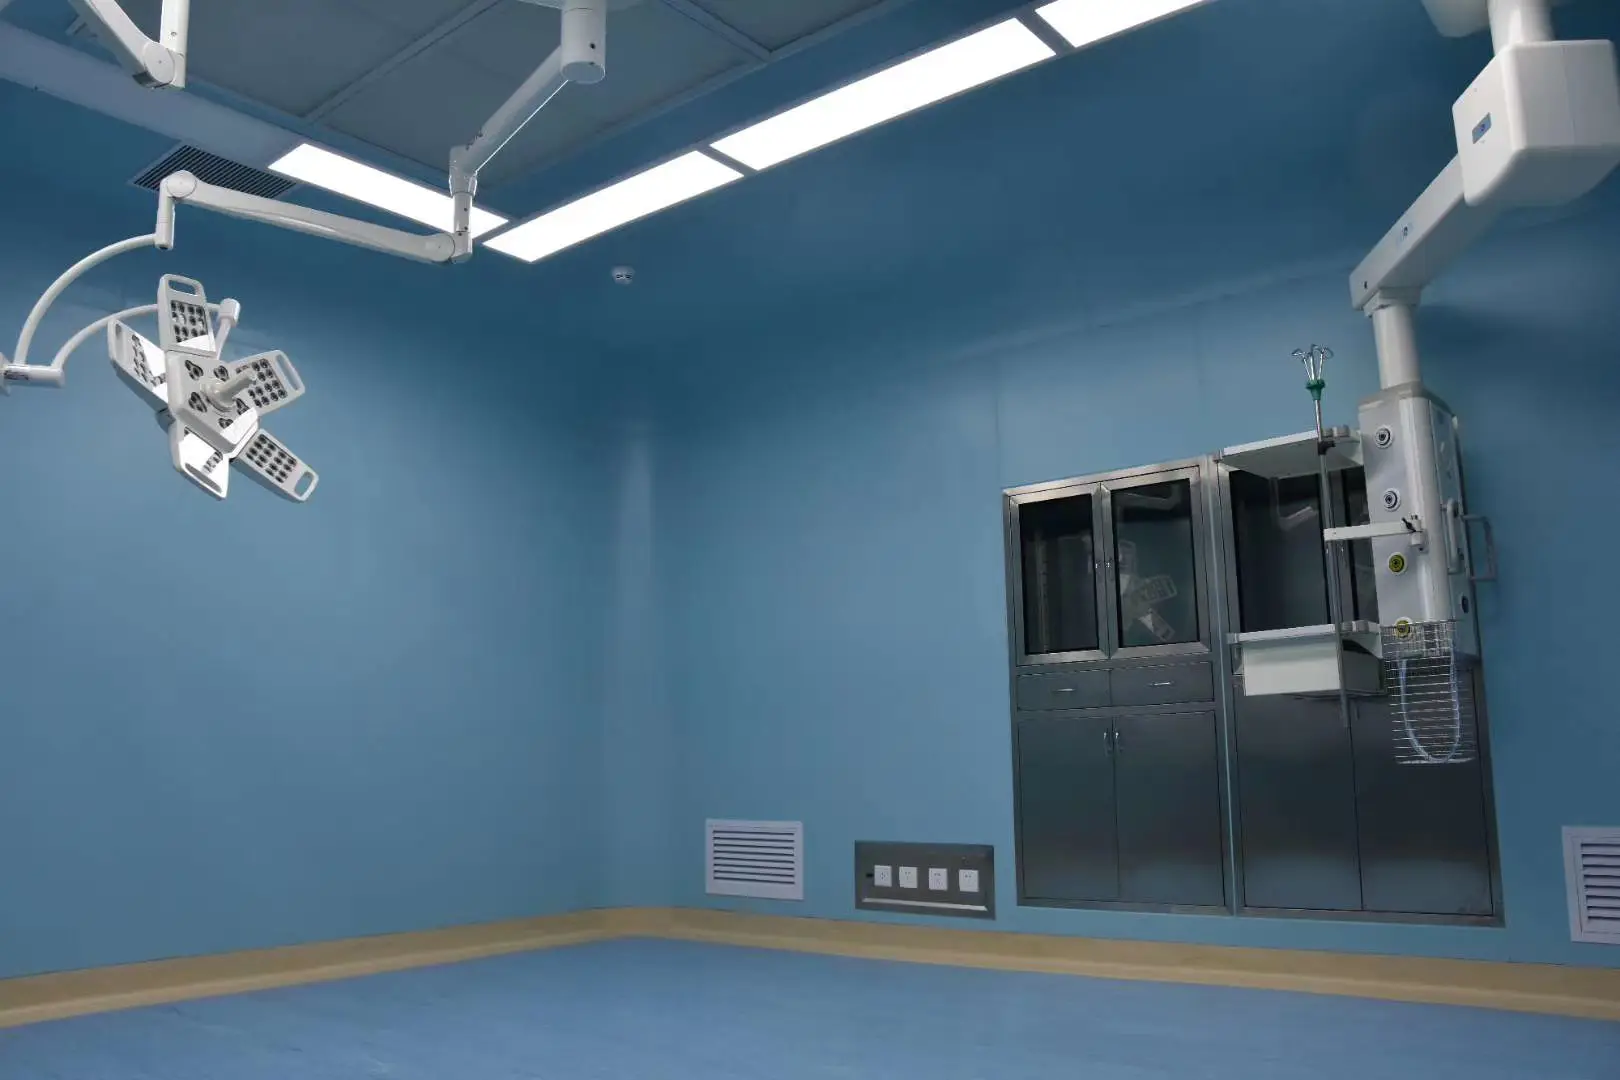 Sala limpa modular OT para sala de operação, sala limpa de hospital com teto